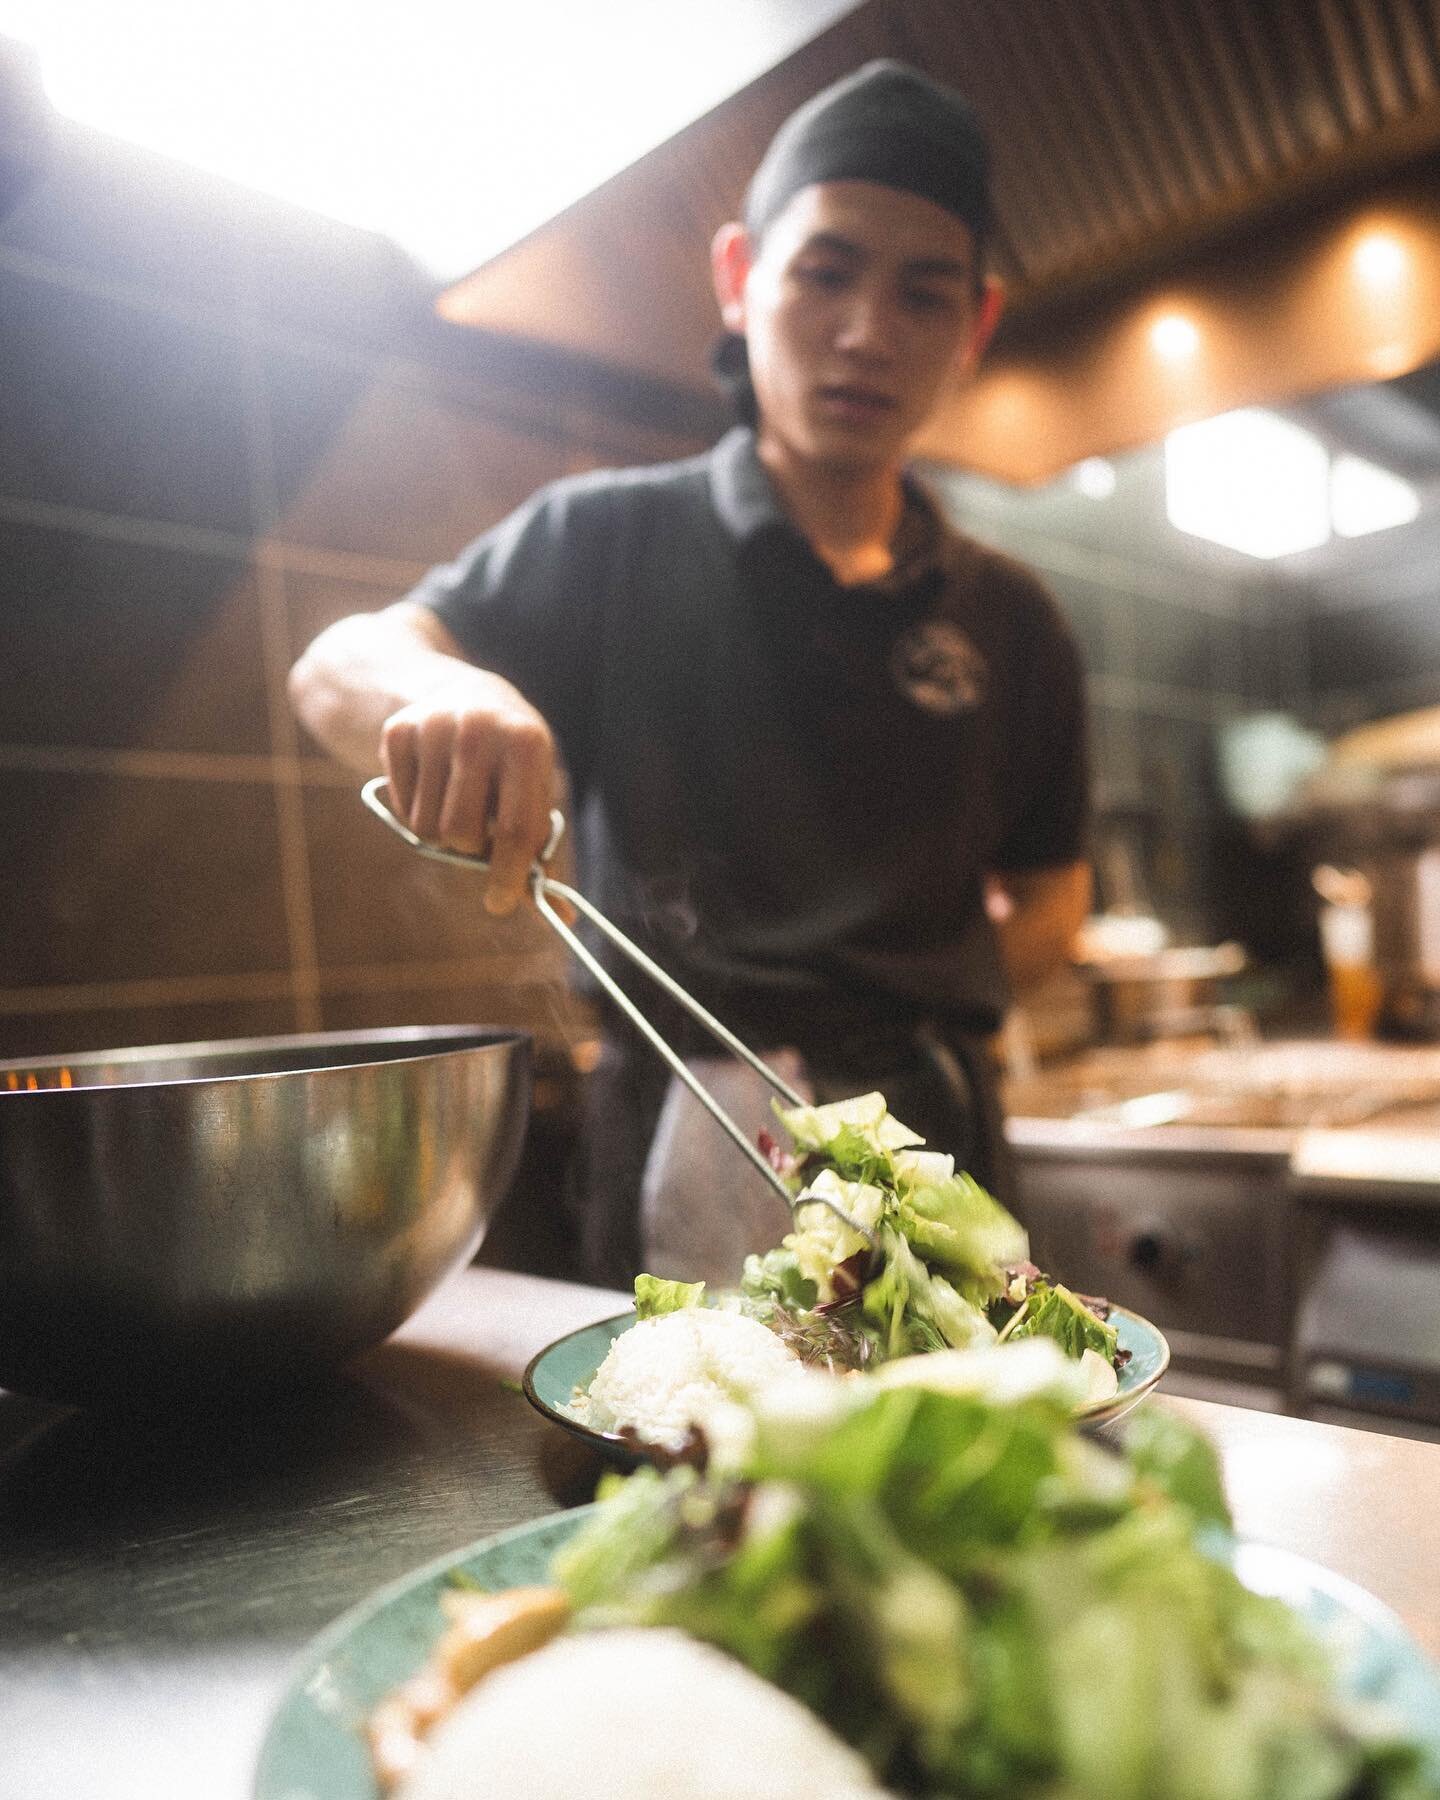 Das Wichtigste bei uns im Asakusa, ist die Qualit&auml;t unseres Essens und das schmeckt man. 
⠀⠀⠀⠀⠀⠀⠀⠀⠀
Deshalb sind all unsere Zutaten, wie unser Fisch, Gem&uuml;se, Reis, Salat etc. immer frisch und haben die beste Qualit&auml;t.
⠀⠀⠀⠀⠀⠀⠀⠀⠀
Welches